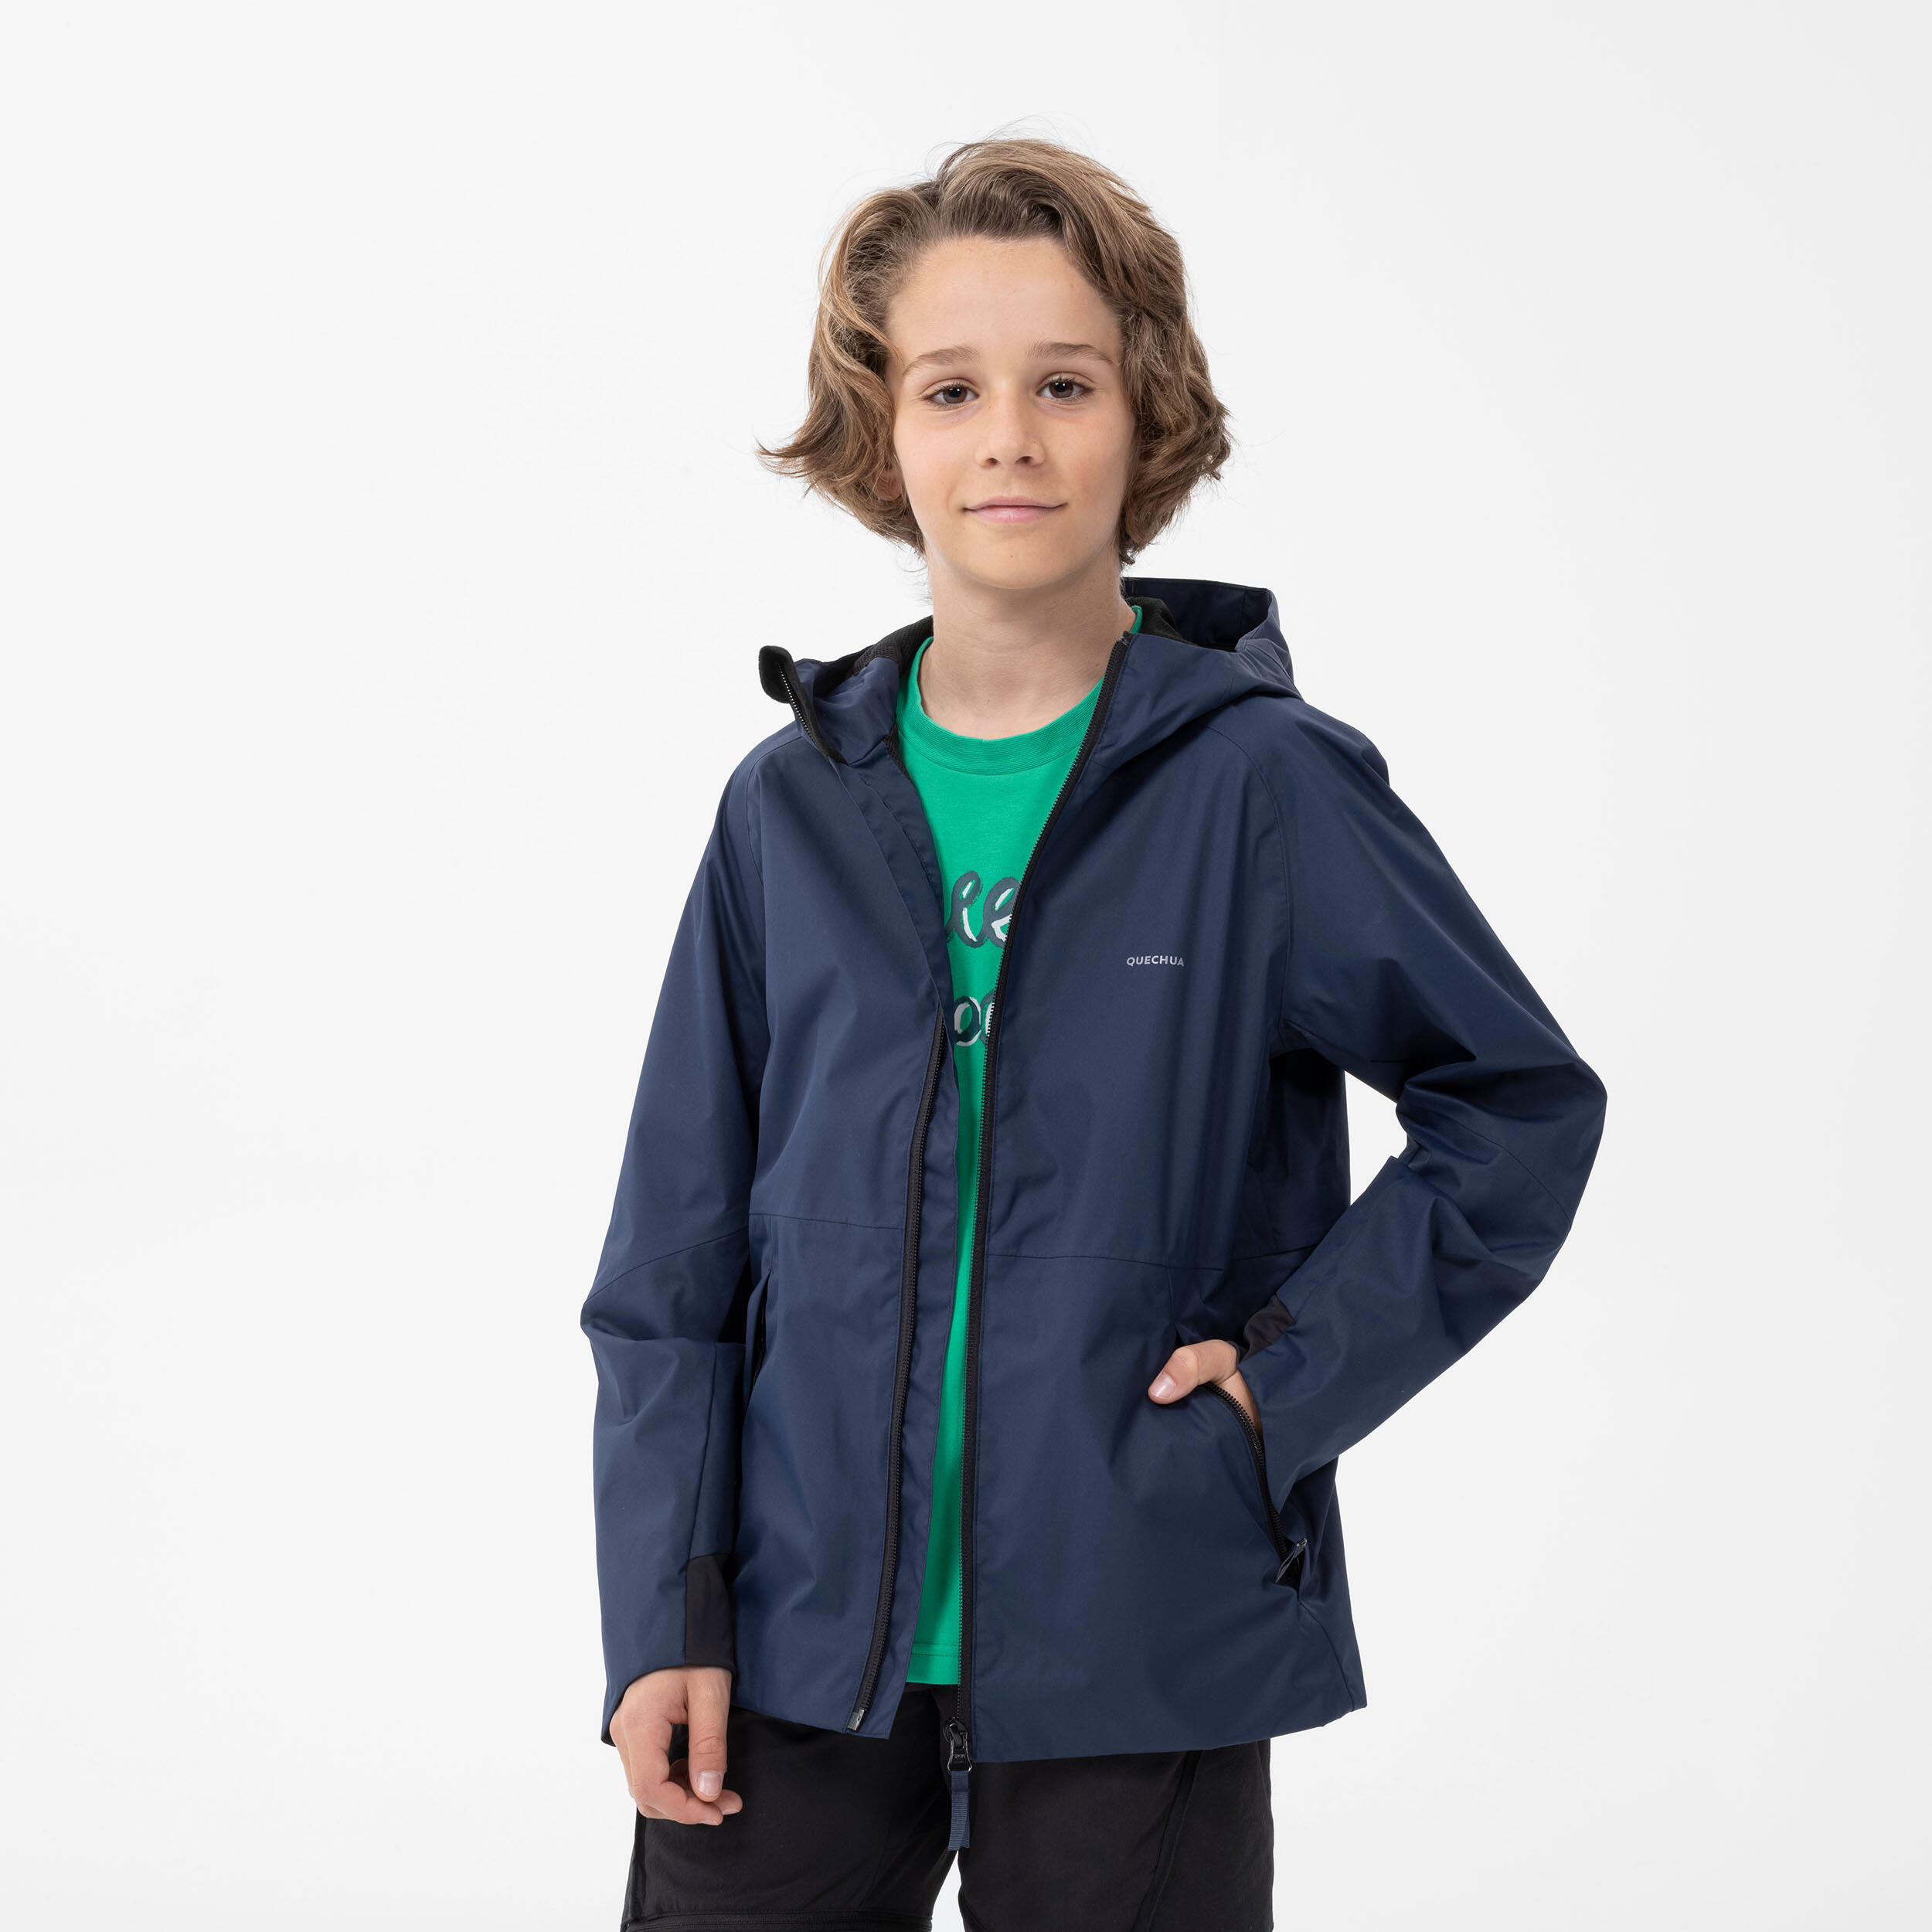 Manteau imperméable enfant – MH 500 bleu marine - QUECHUA